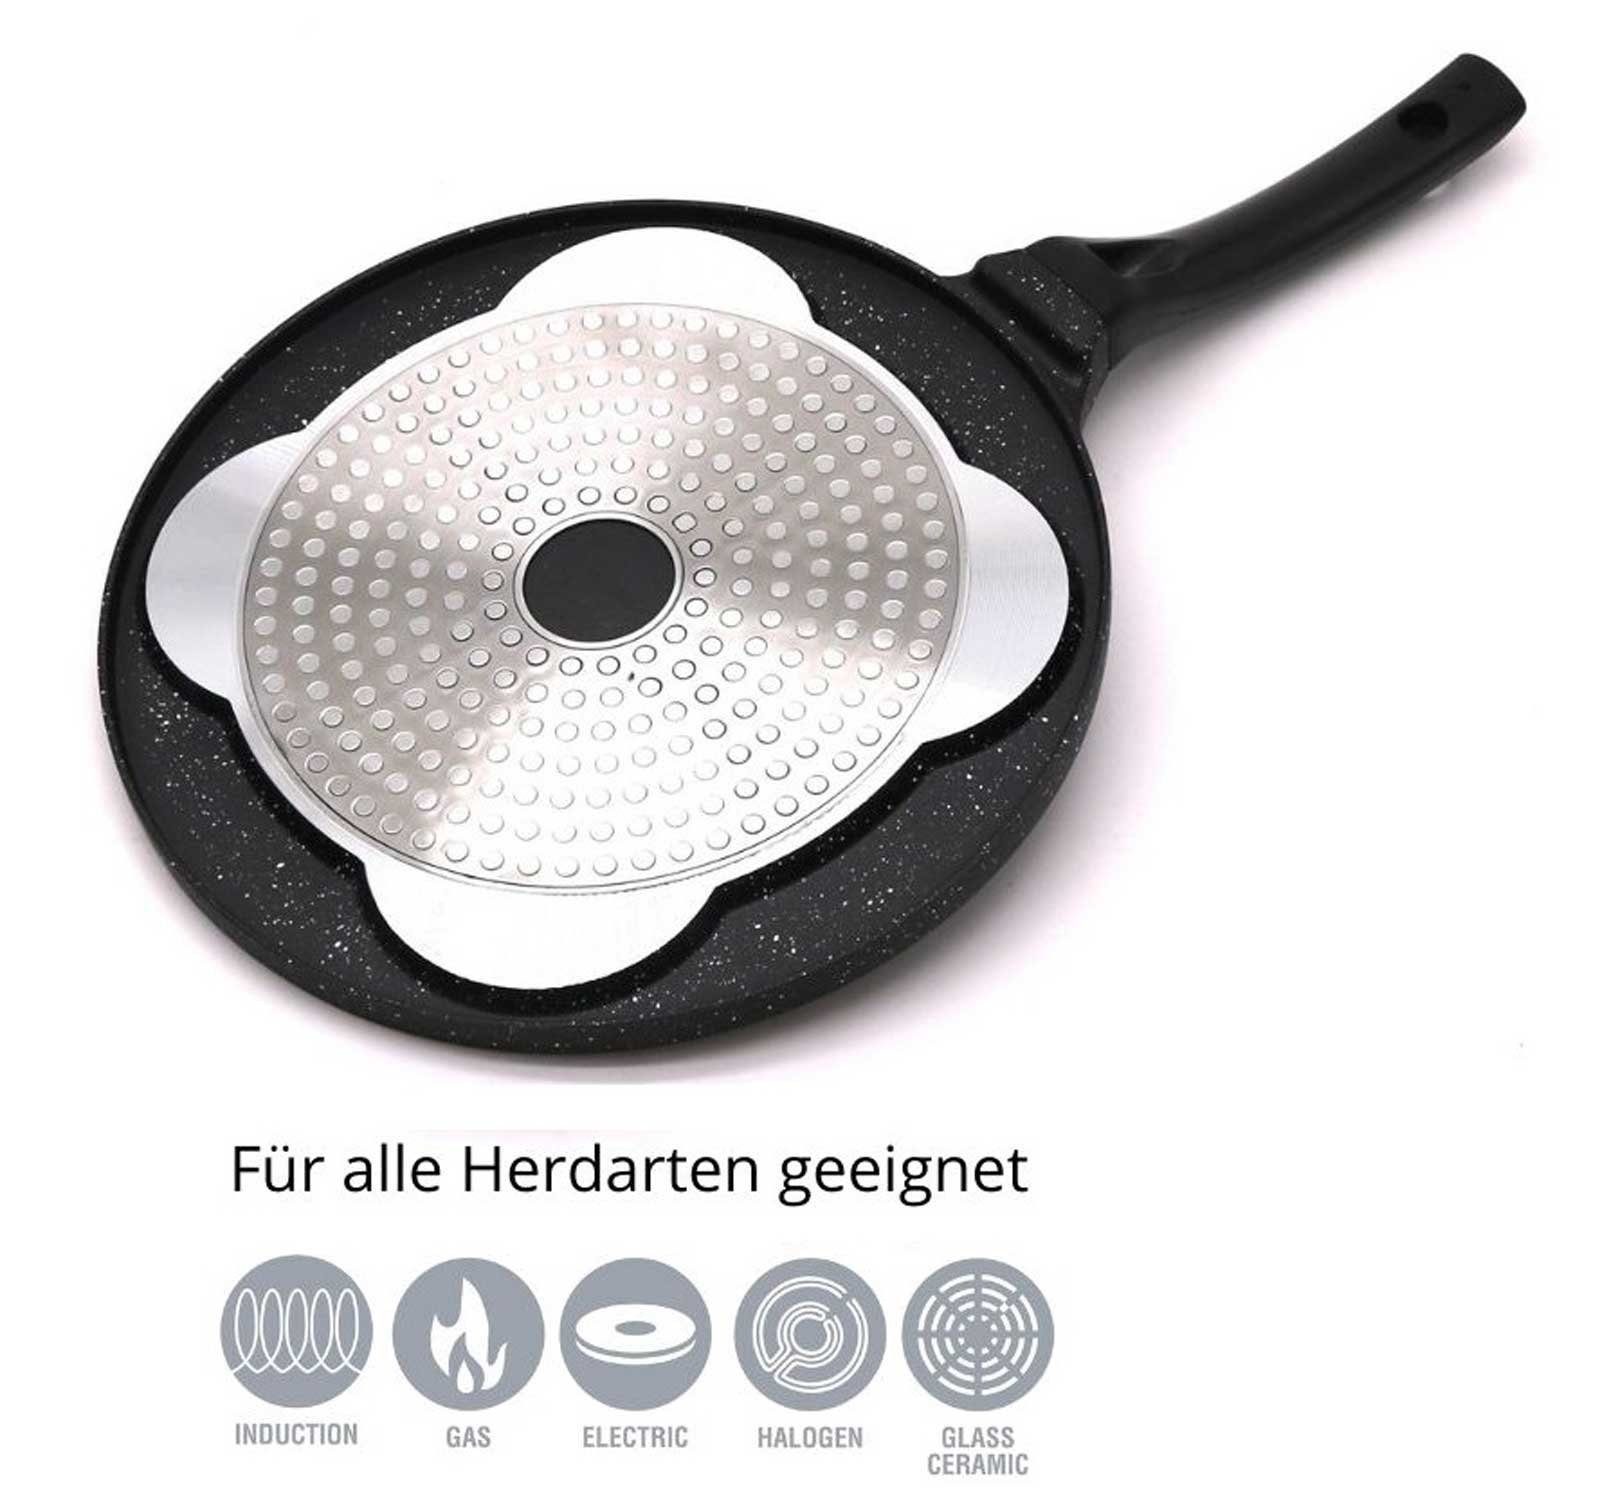 Pfanne Pfannkuchen Alu-Guss Material: Induktion, Cheffinger Pancake Ø26cm Crêpepfanne Aluminium Spiegelei